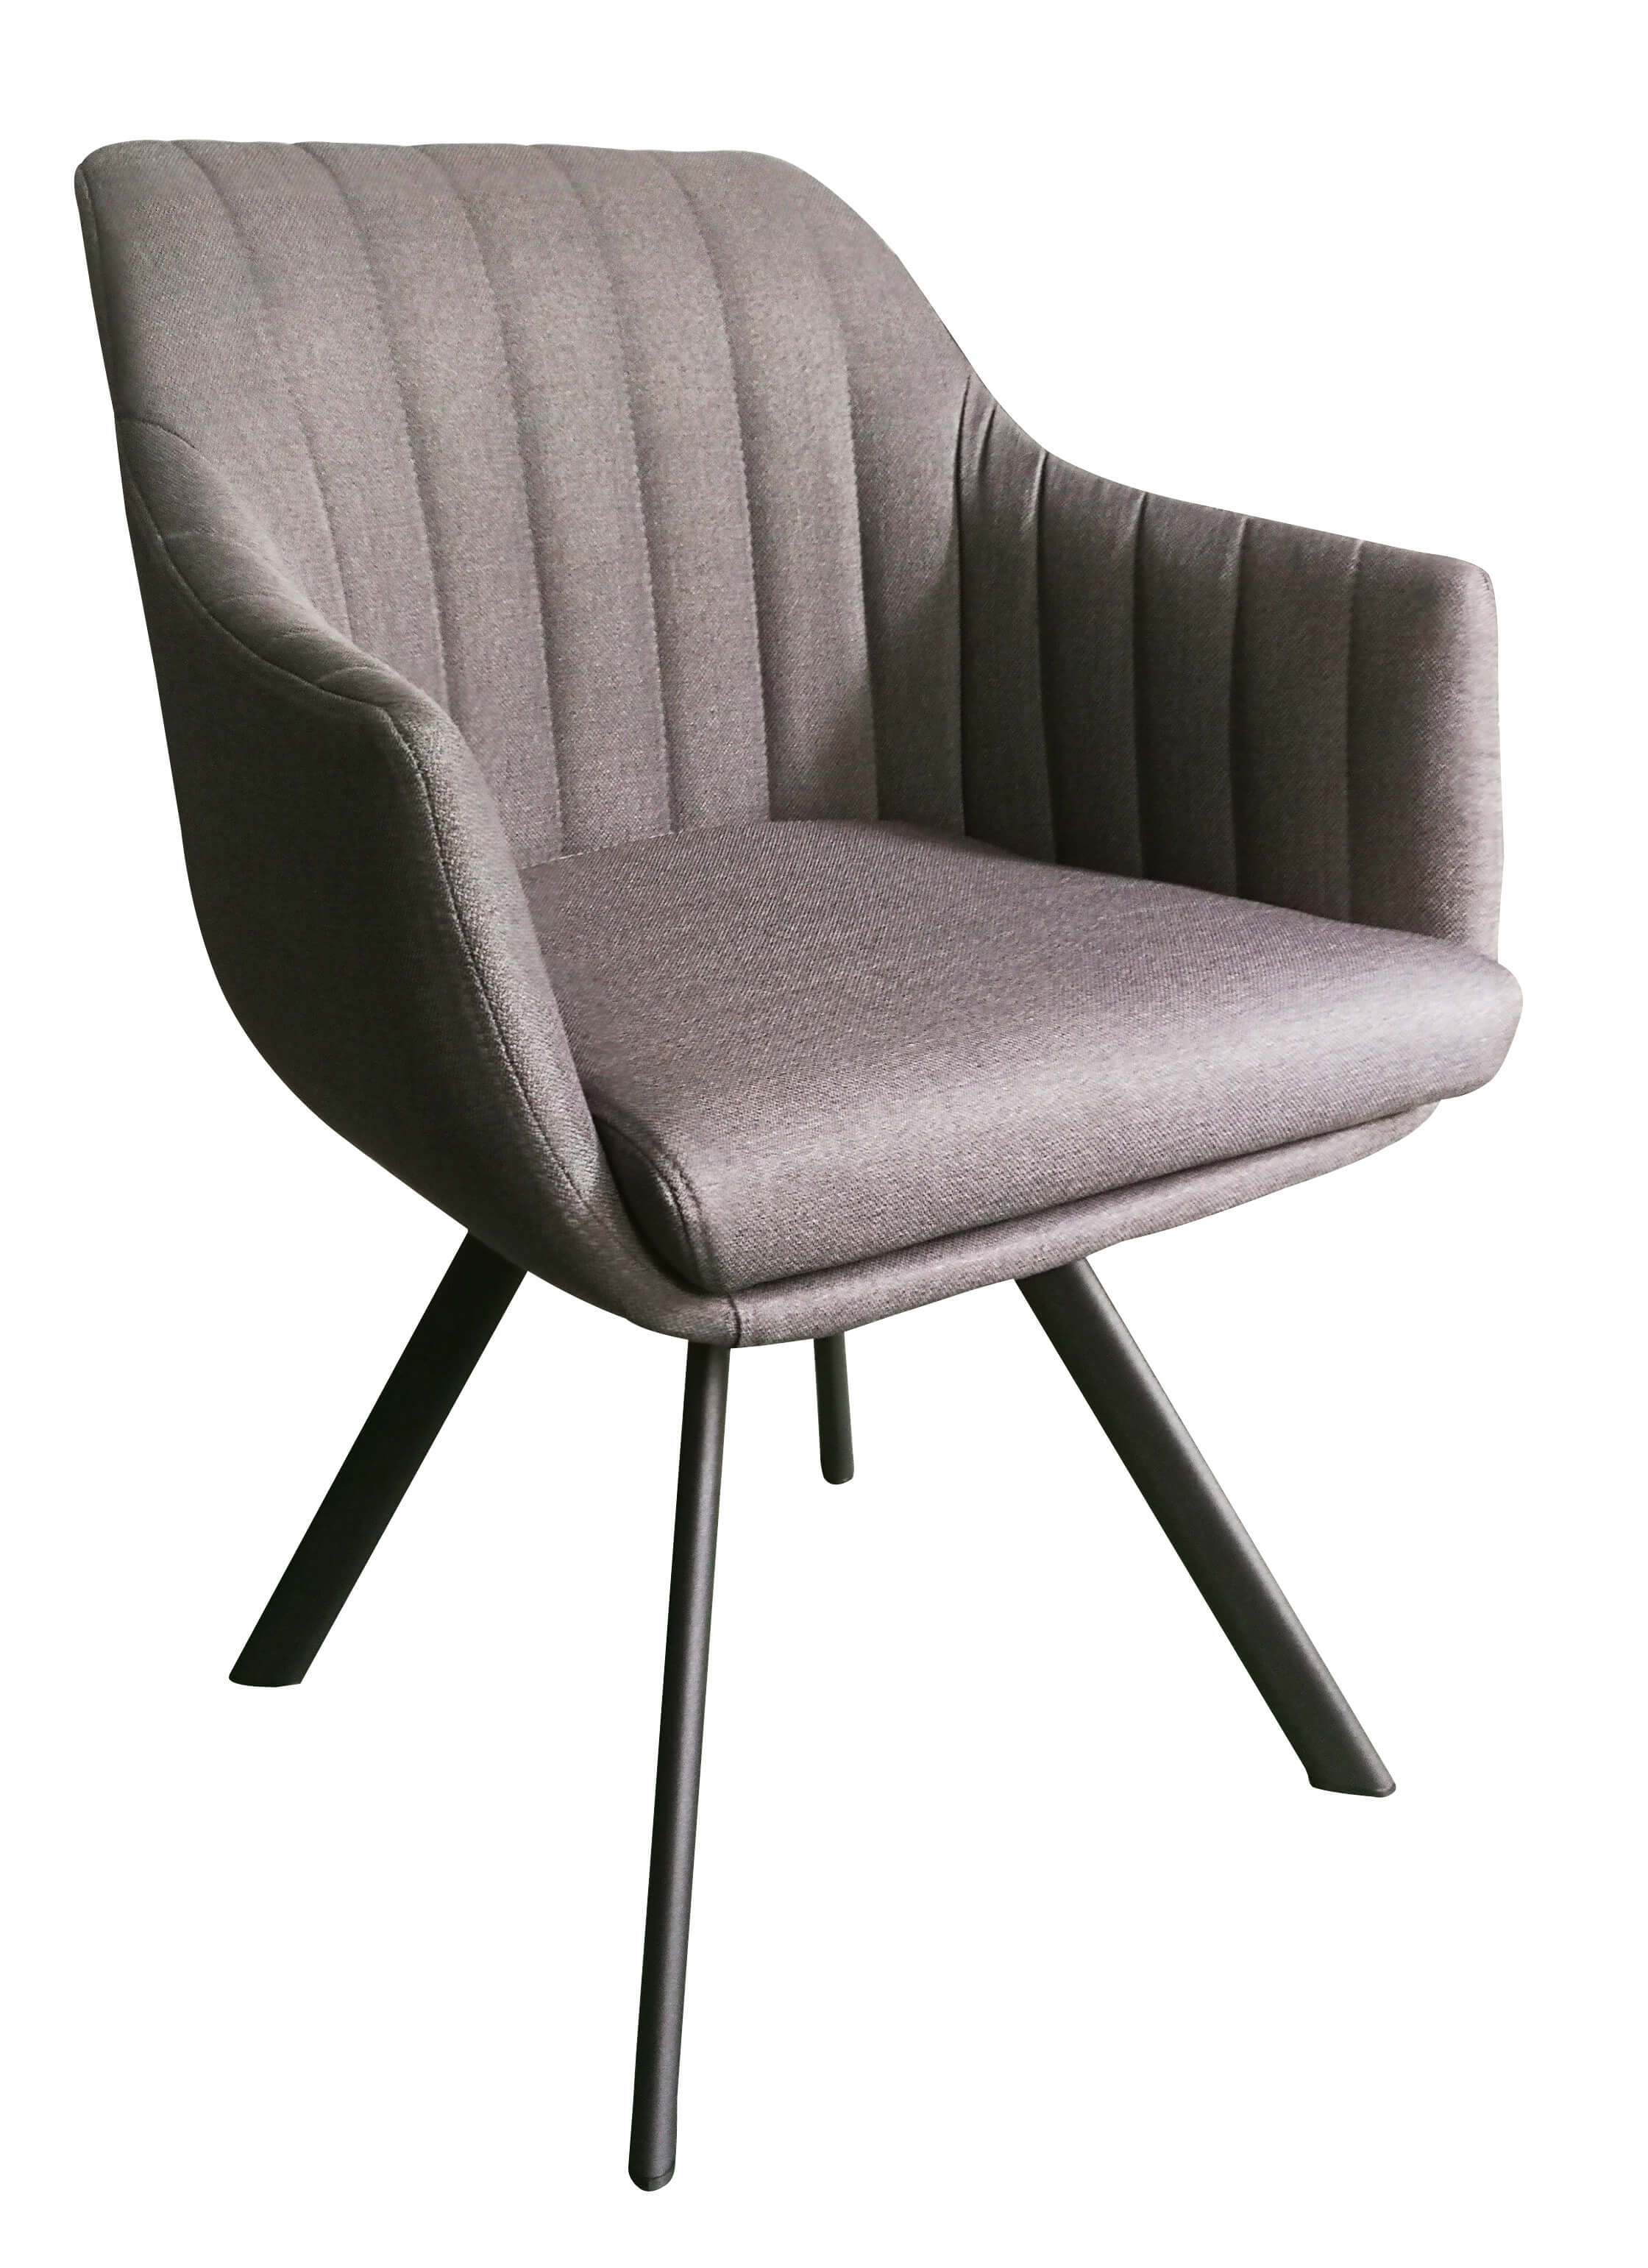 929-4  卡羅鐵藝灰色布餐椅